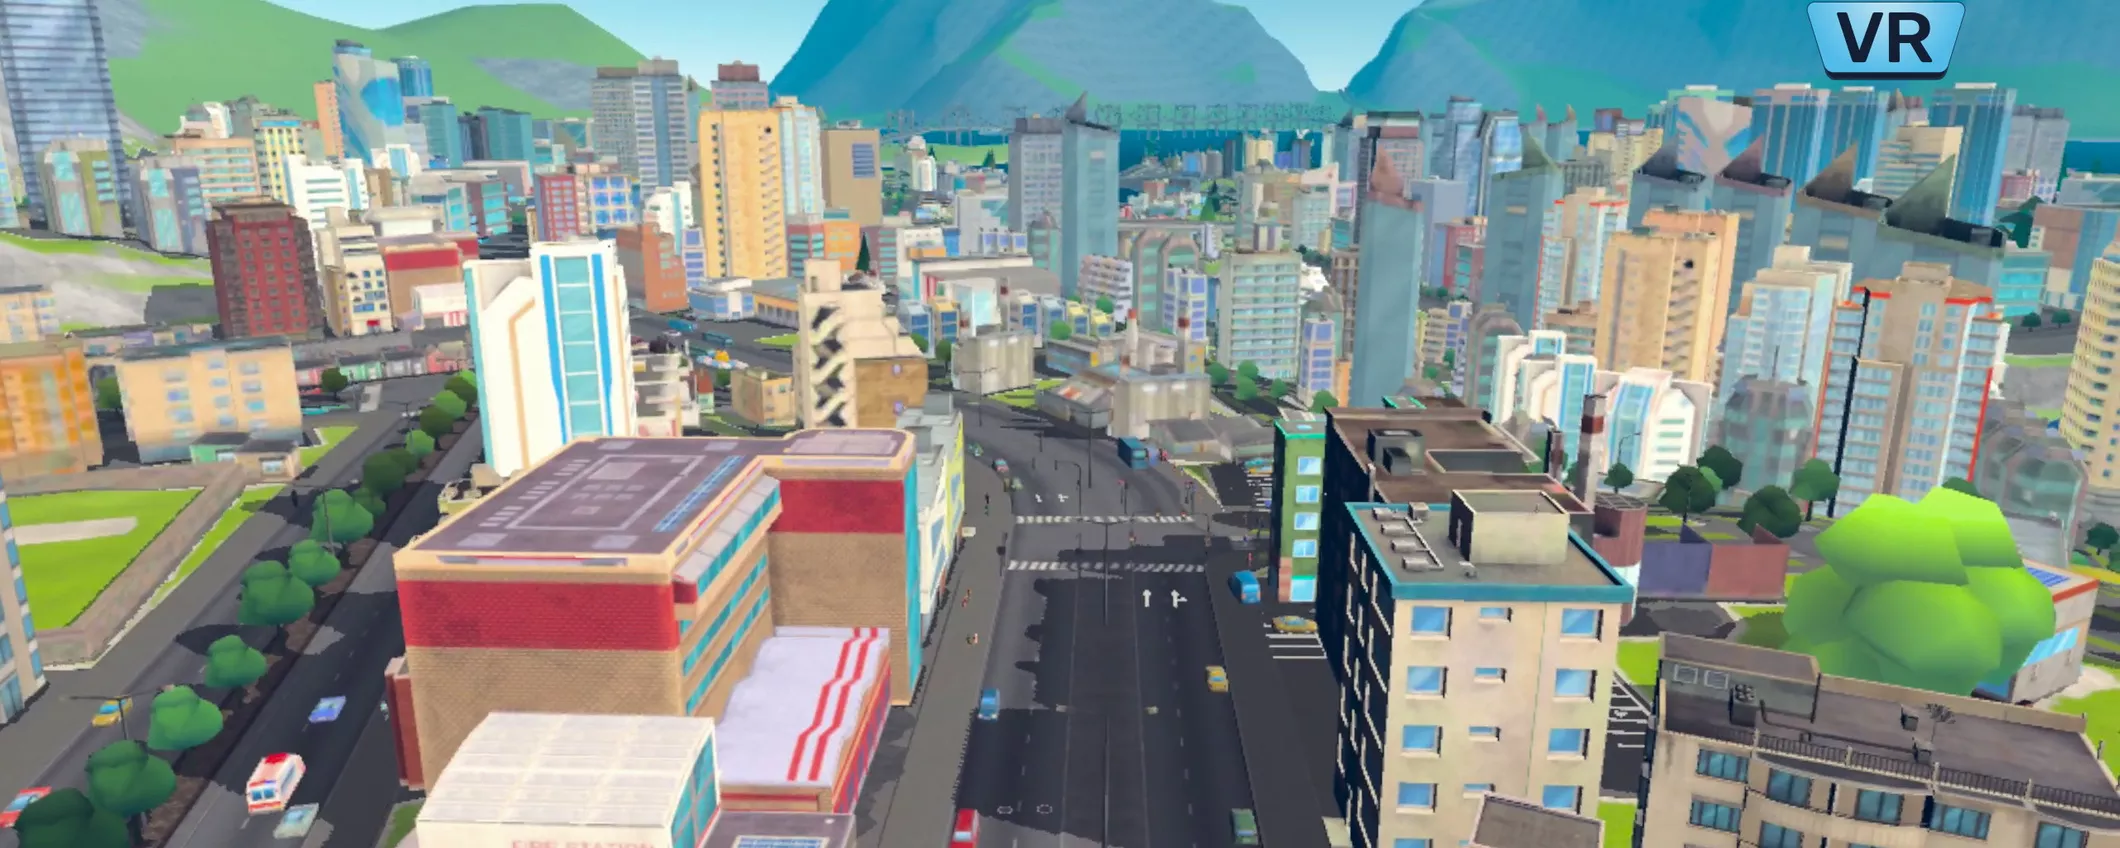 Metaverso, costruisci la tua città dei sogni con Cities: VR su Meta Quest 2